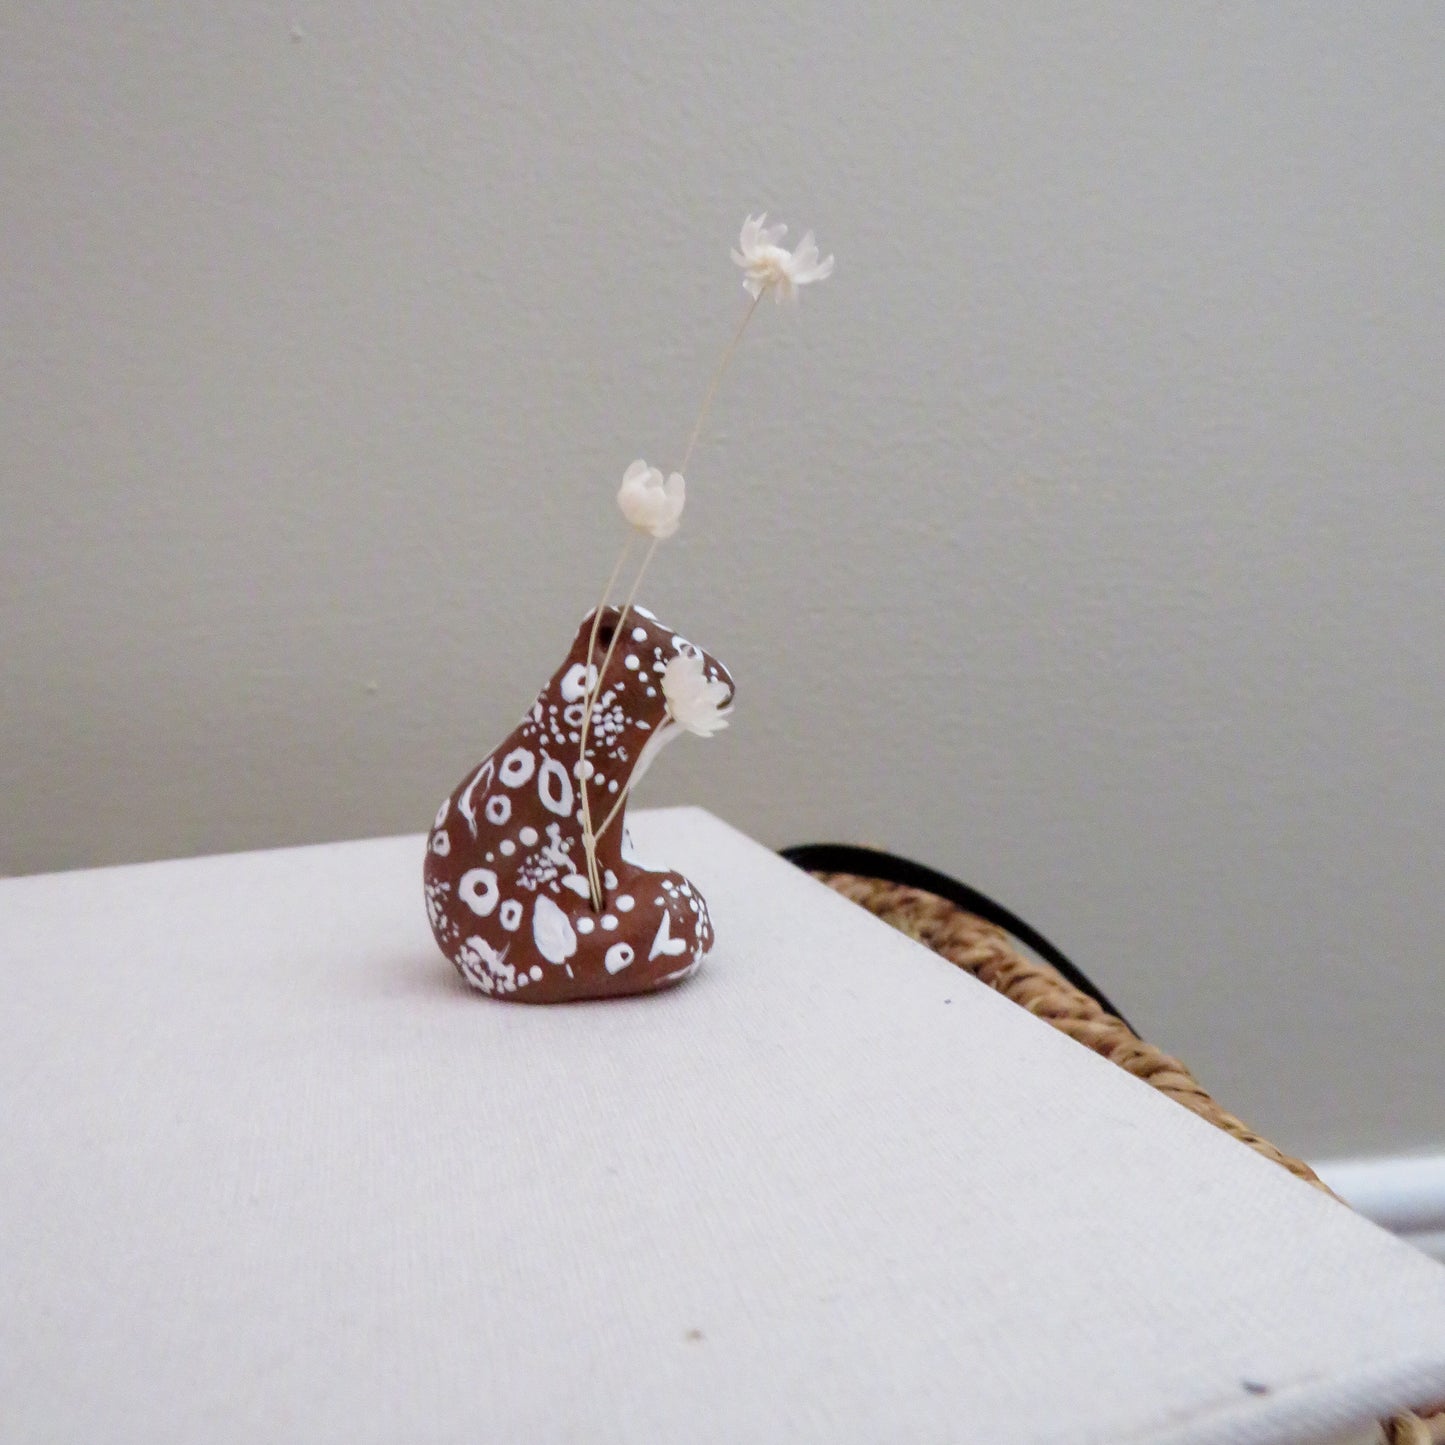 Little squirrel sculpture